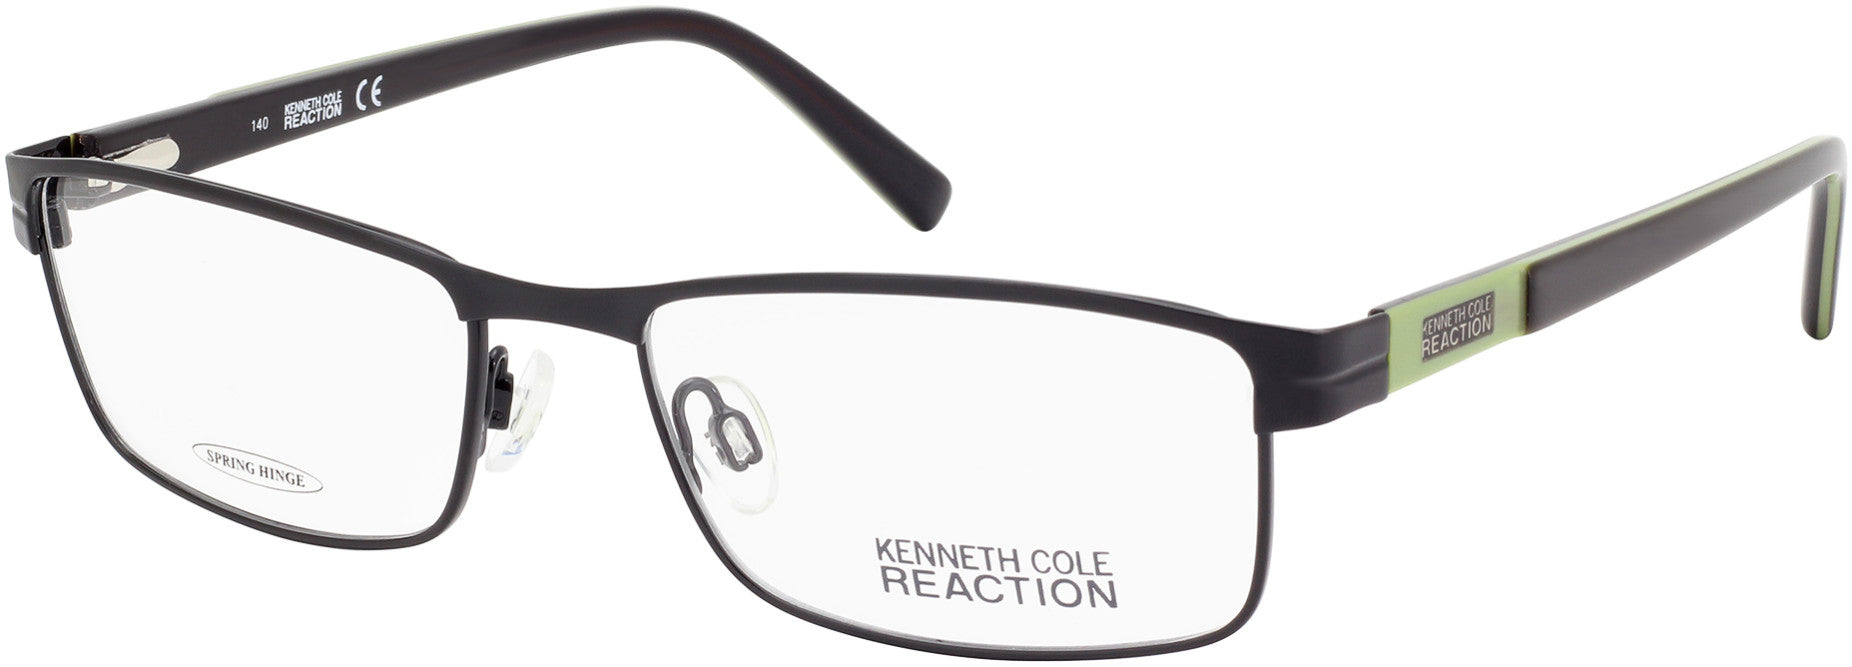 Kenneth Cole New York,Kenneth Cole Reaction KC0752 Eyeglasses 002-002 - Matte Black